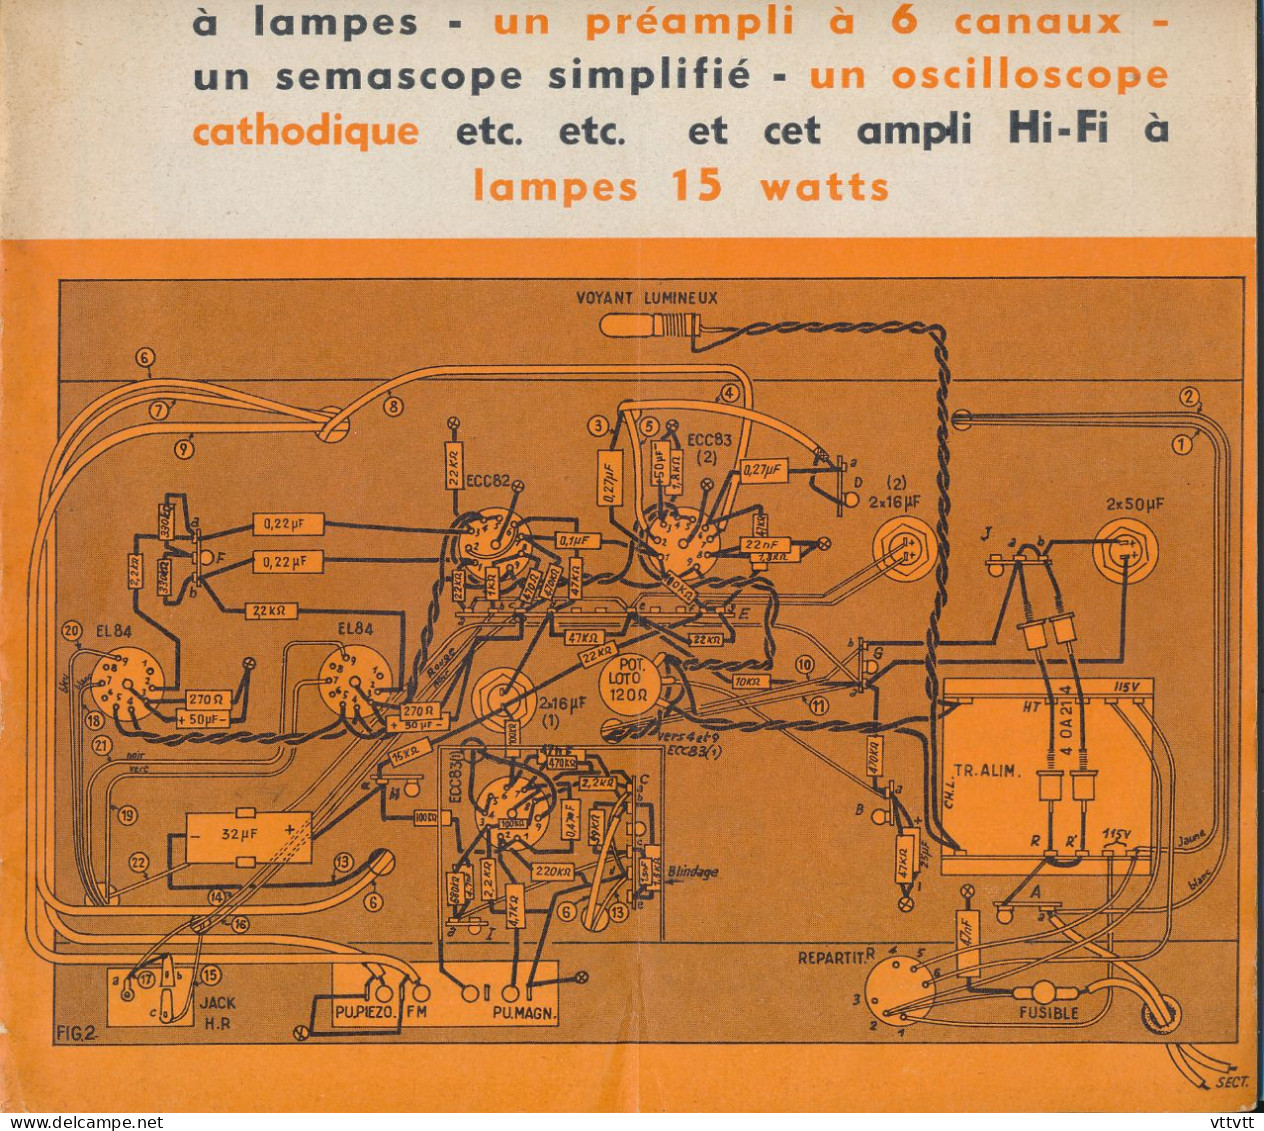 "Radio Plans" N° 238, Aout 1967, Au Service De L'amateur De Radio, TV Et Electronique. Sommaire : Voir Scan. - Literatuur & Schema's